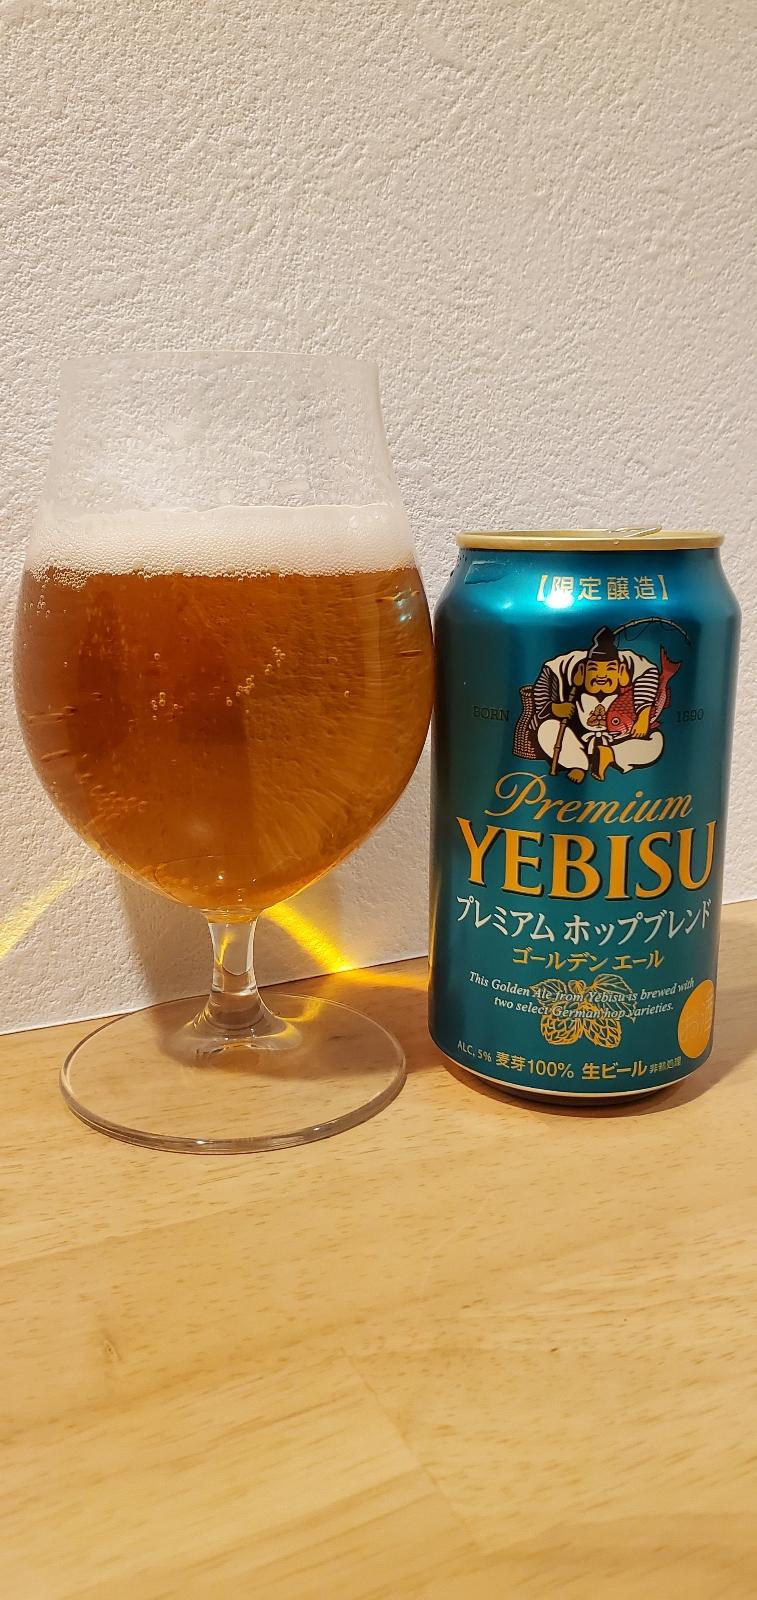 Yebisu Premium Premium Hop Blend